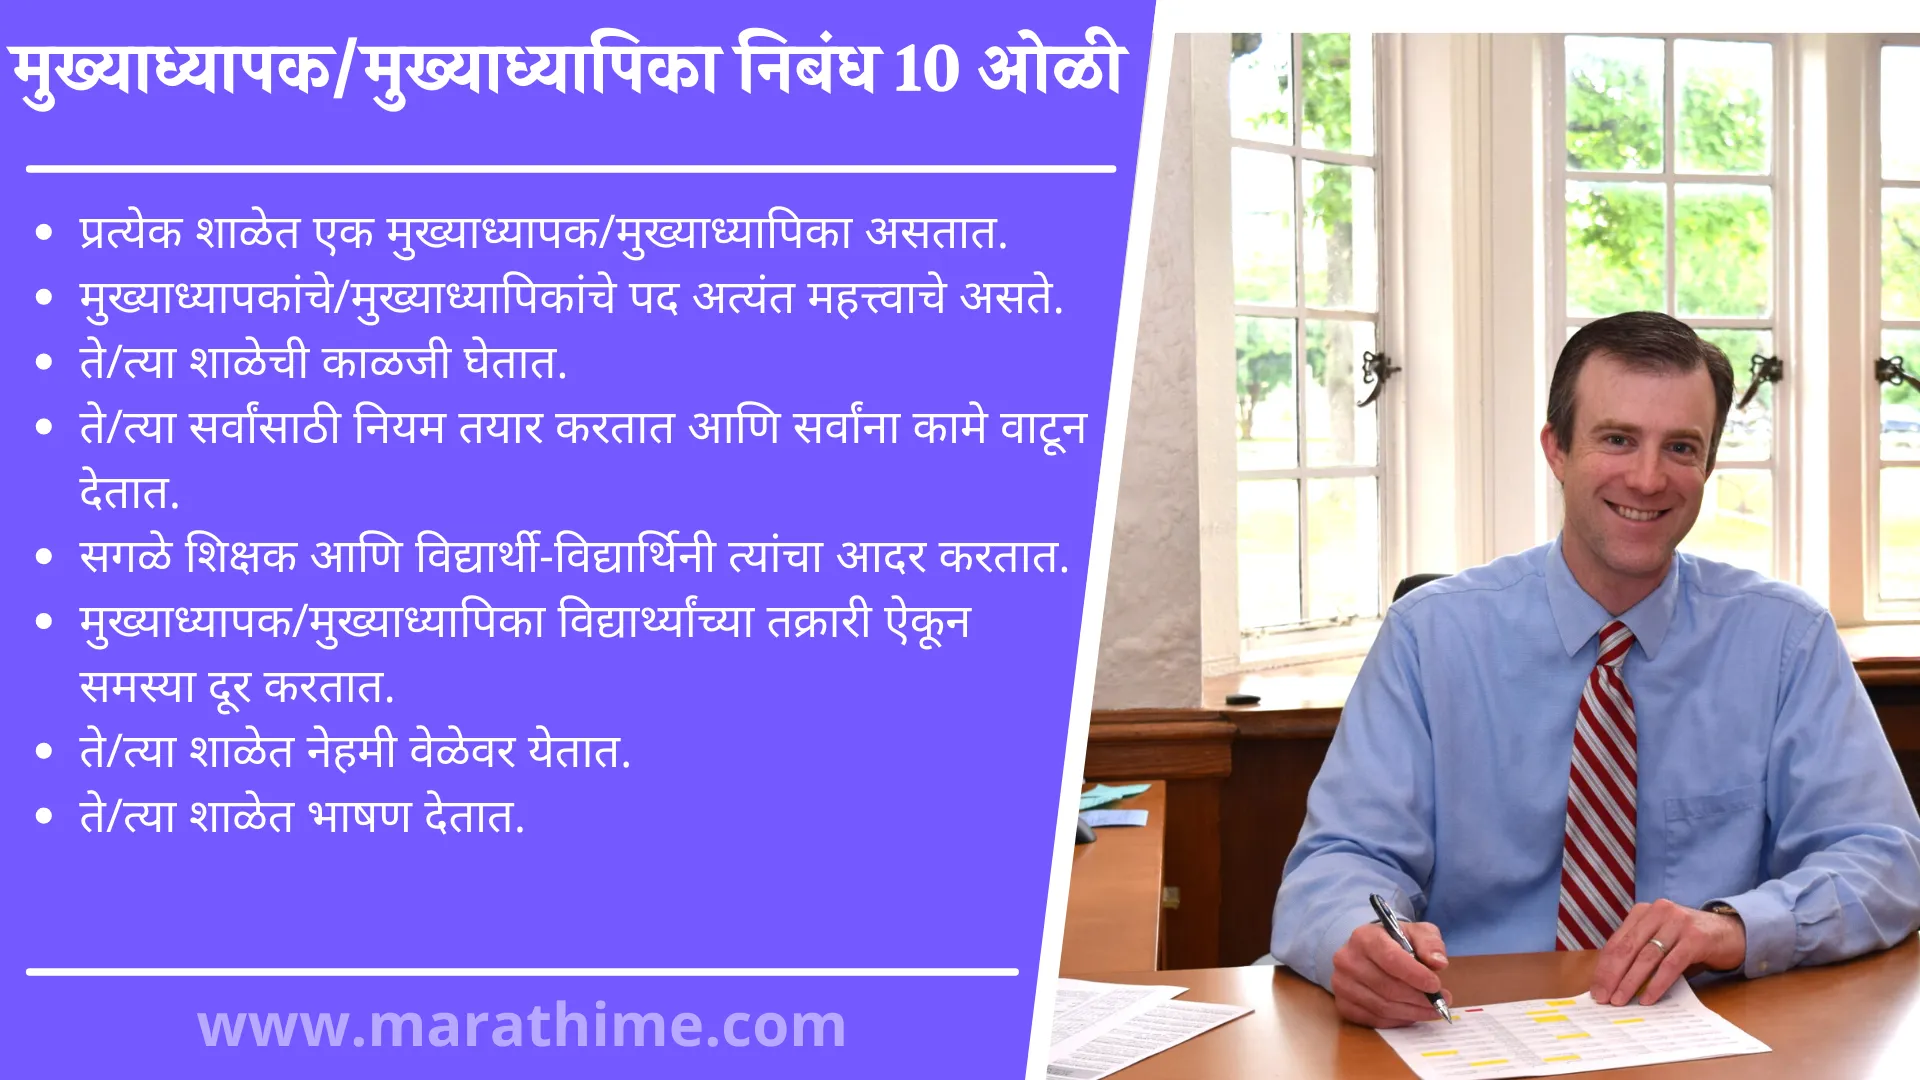 मुख्याध्यापक/मुख्याध्यापिका निबंध 10 ओळी, 10 Lines On Headmaster in Marathi